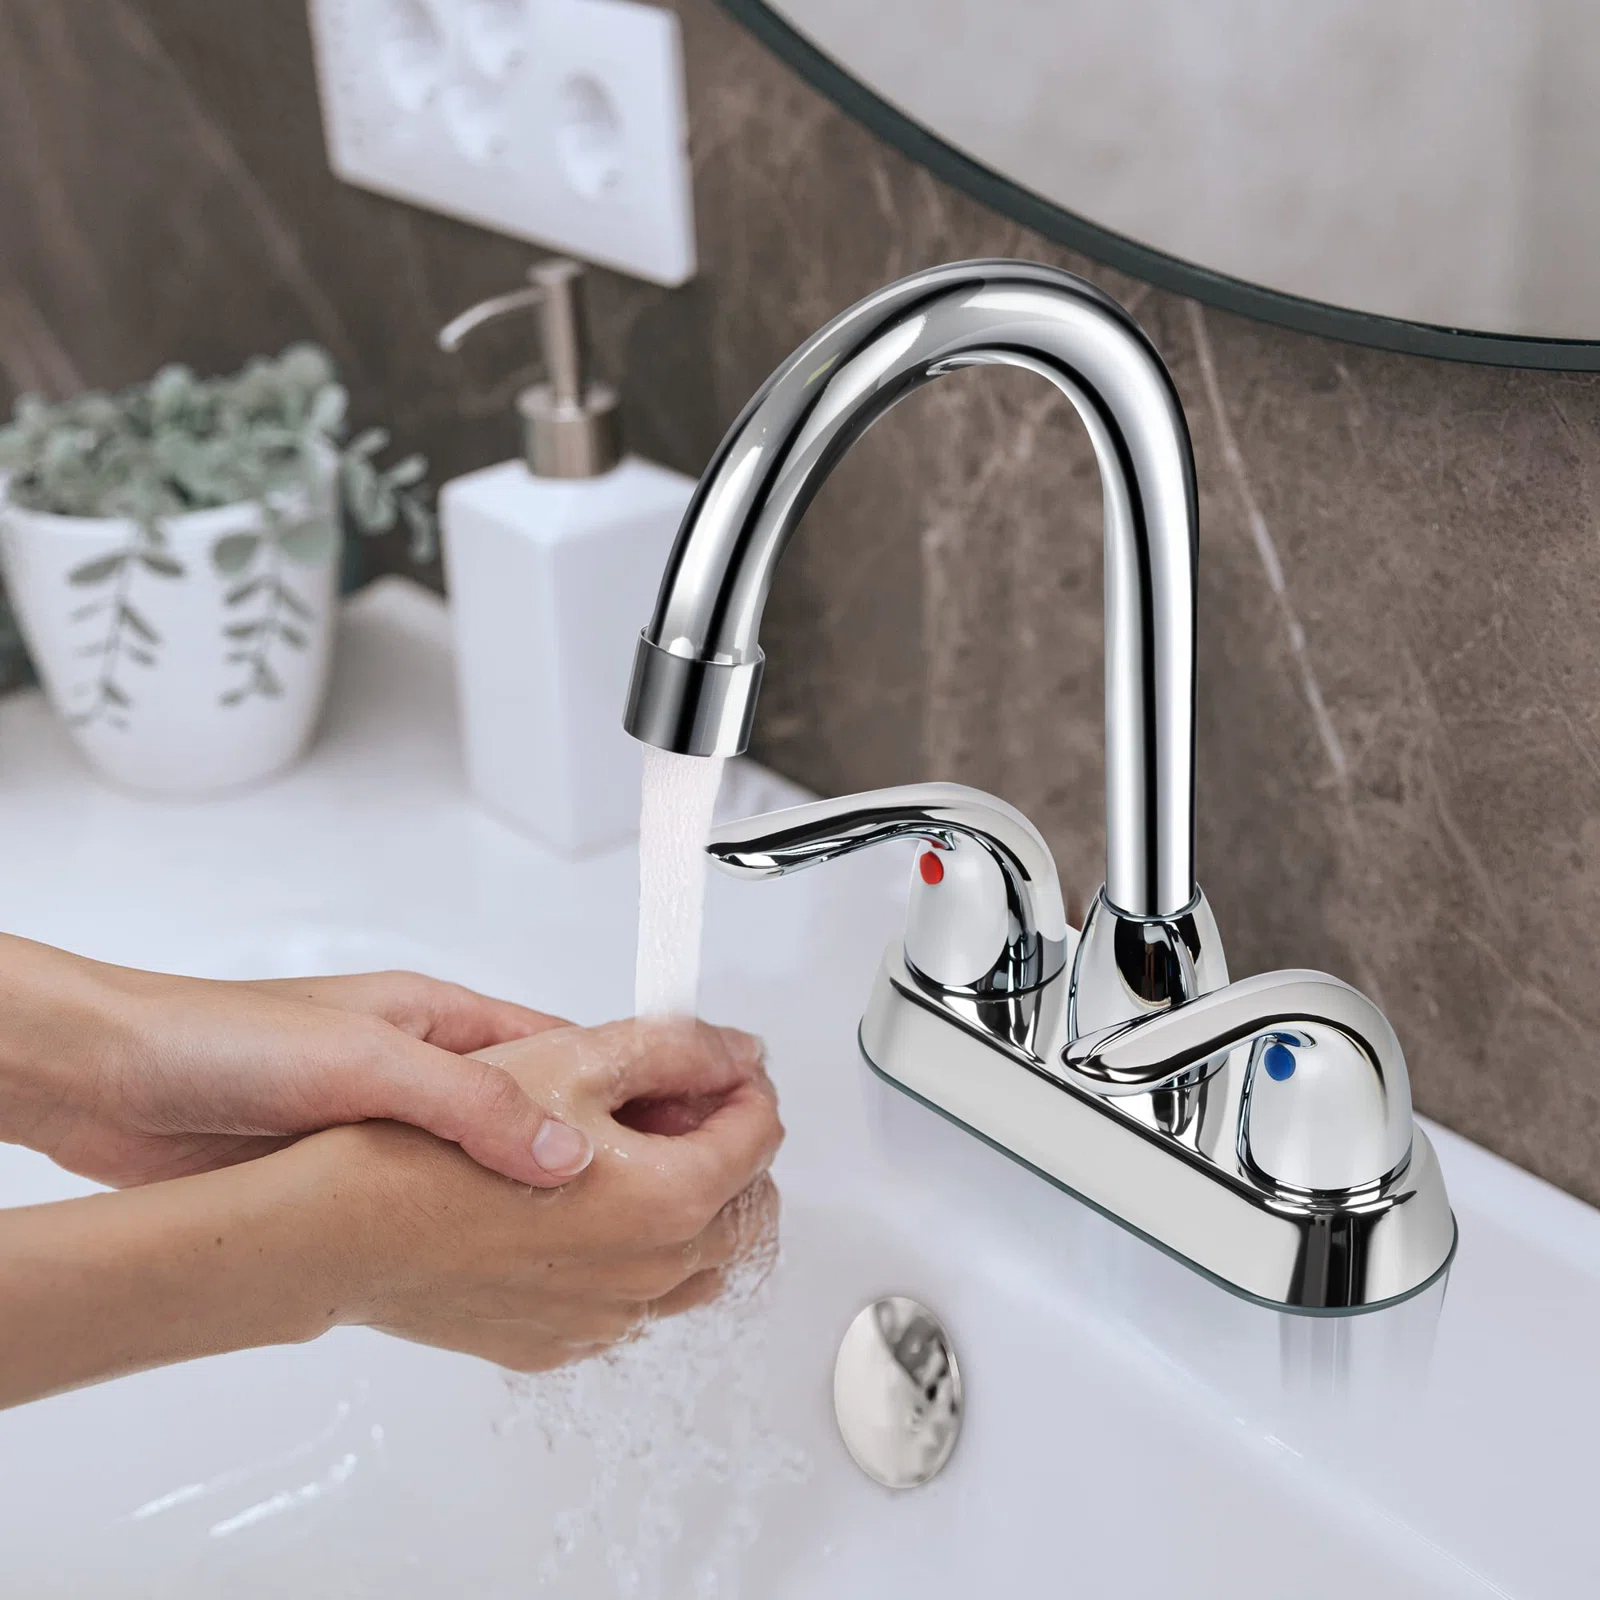 CUPC diffuso 4 pollici Centerset 2 maniglie rubinetto per lavabo bagno rubinetti miscelatori acqua per bagno